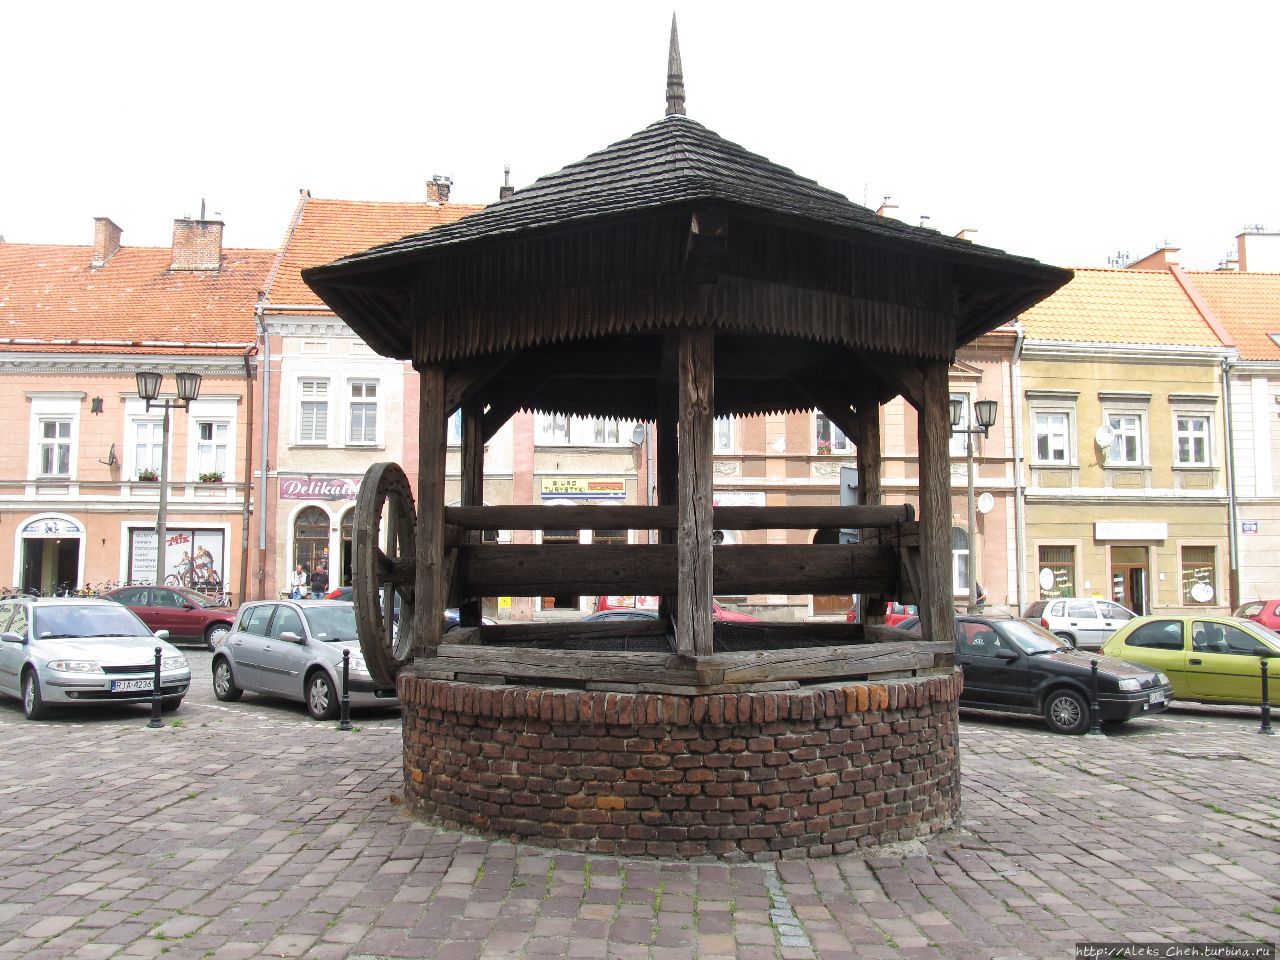 Колодец (студня) на рыночной площади. Ярослав, Польша